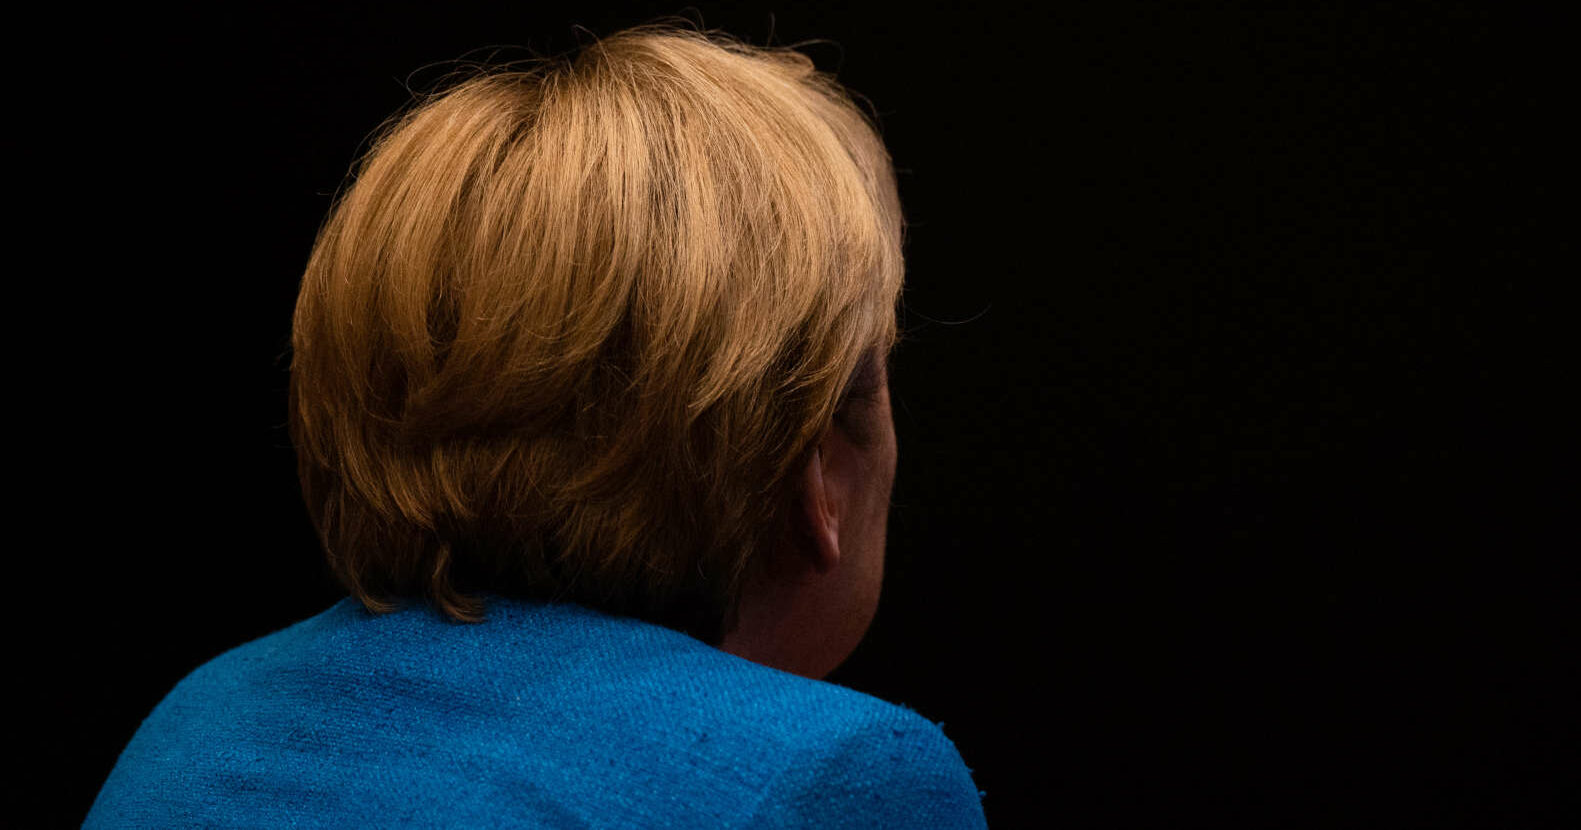 Angela Merkel kehrt der Politik bald den Rücken. Ihre Arbeit wird jedoch noch lange im positiven wie im negativen Sinn nachhallen.